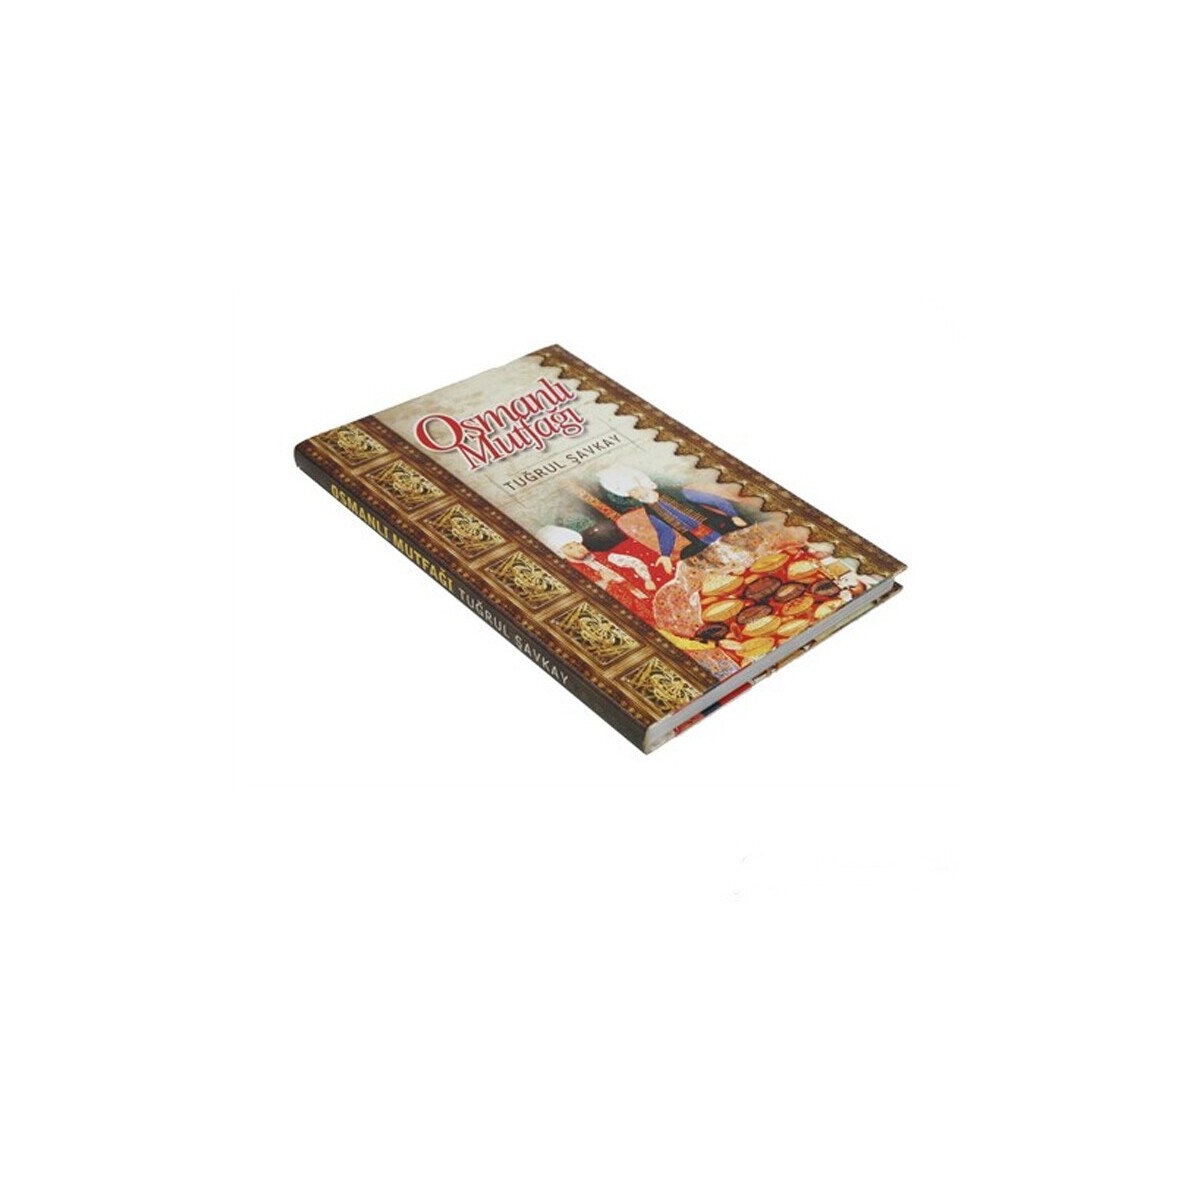 Mutfağın Master Şeflerine Özel 2 Cilt Takım: Osmanlı Mutfağı Kitabı Alana Tatlı Kitabı Hediye